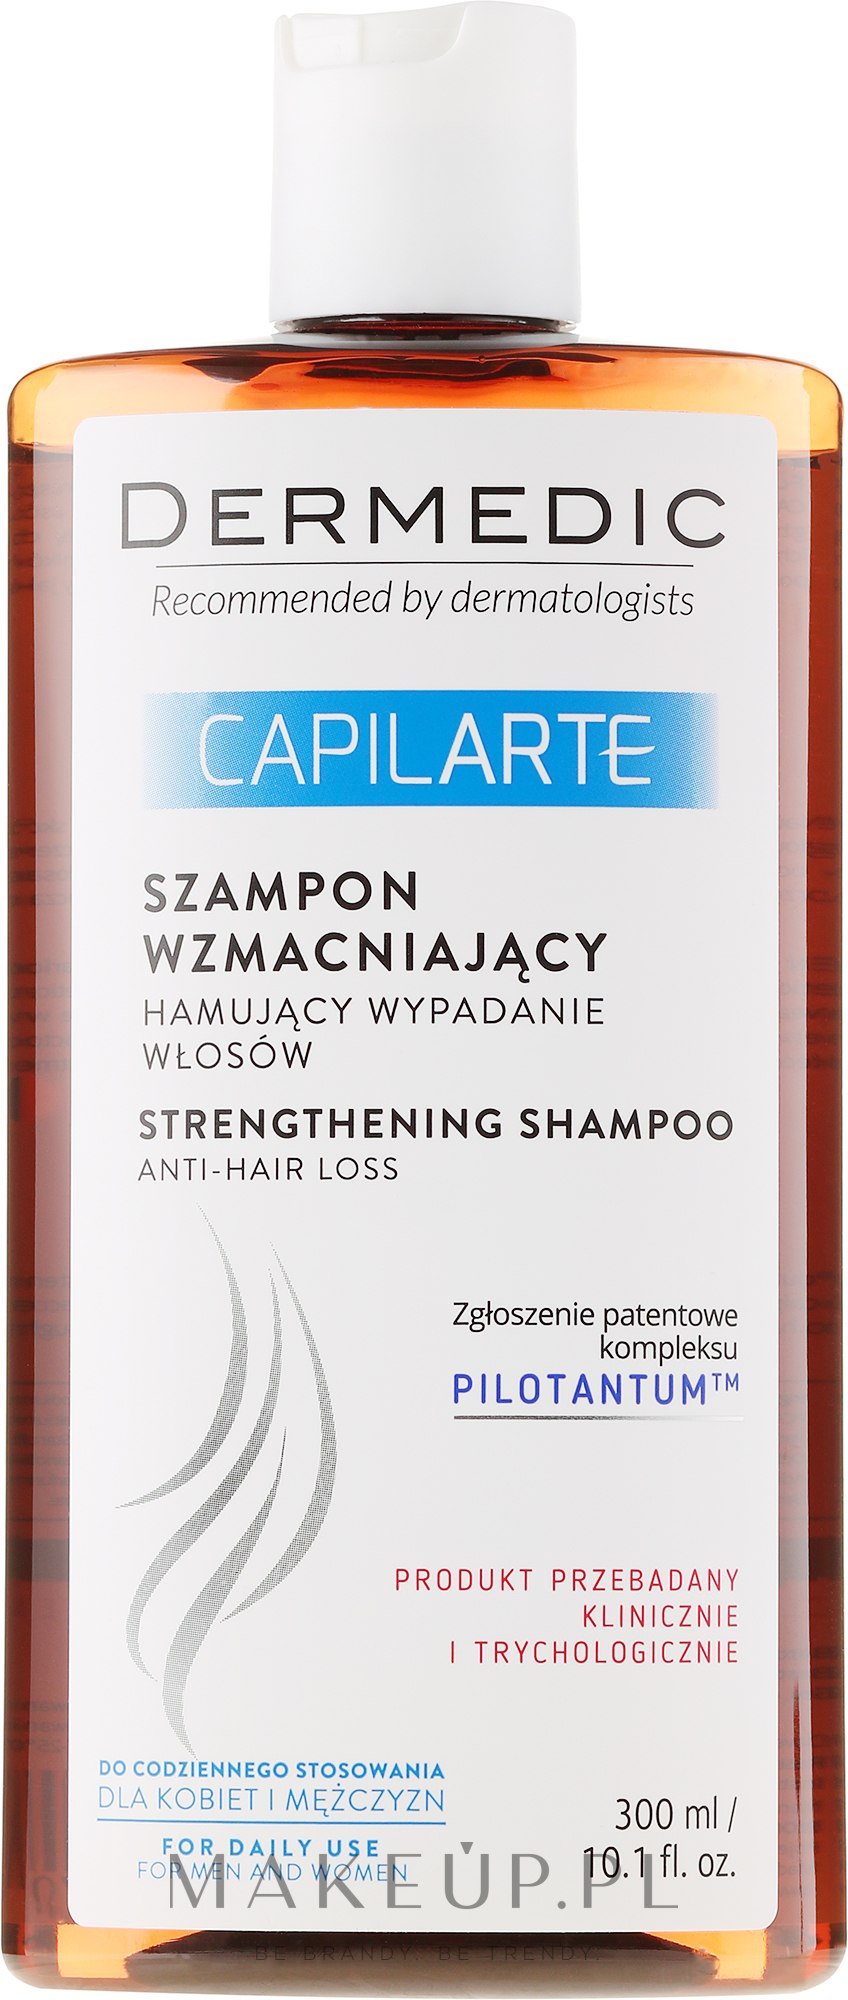 dermedic capilarte szampon wzmacniający i hamujący wypadanie włosów 300